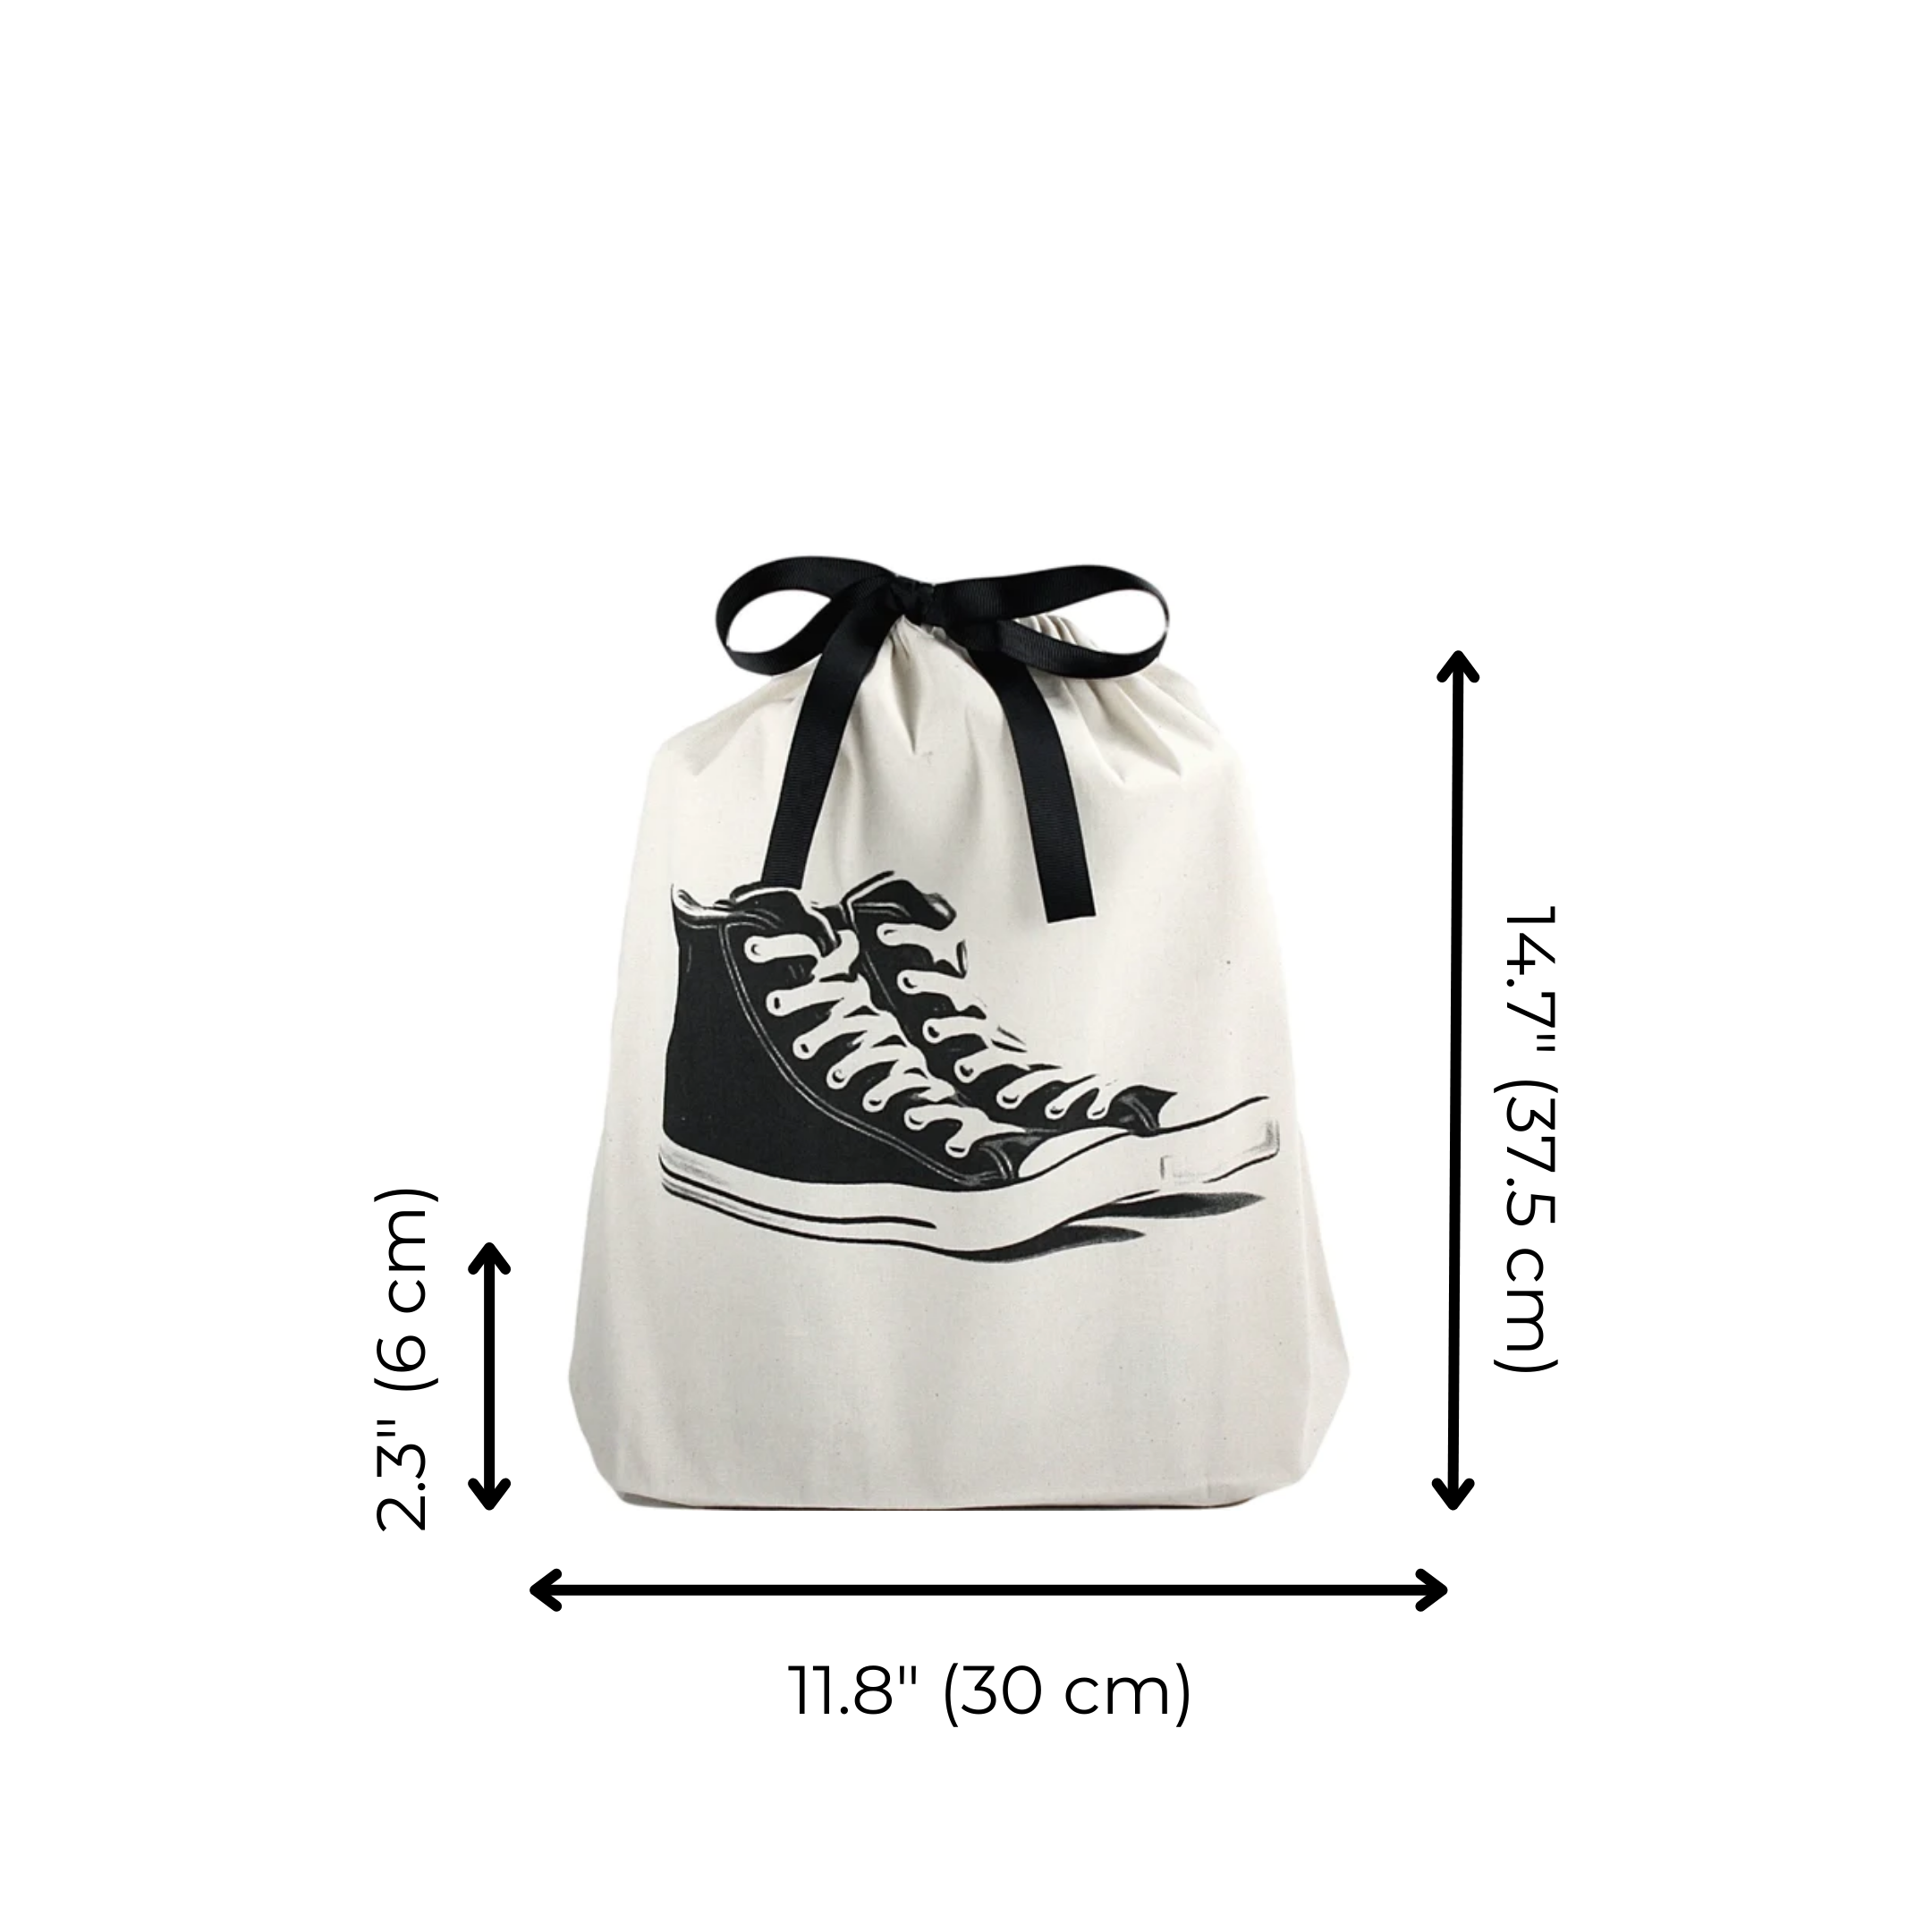 Sneakers Shoe Bag, Cream | Bag-all